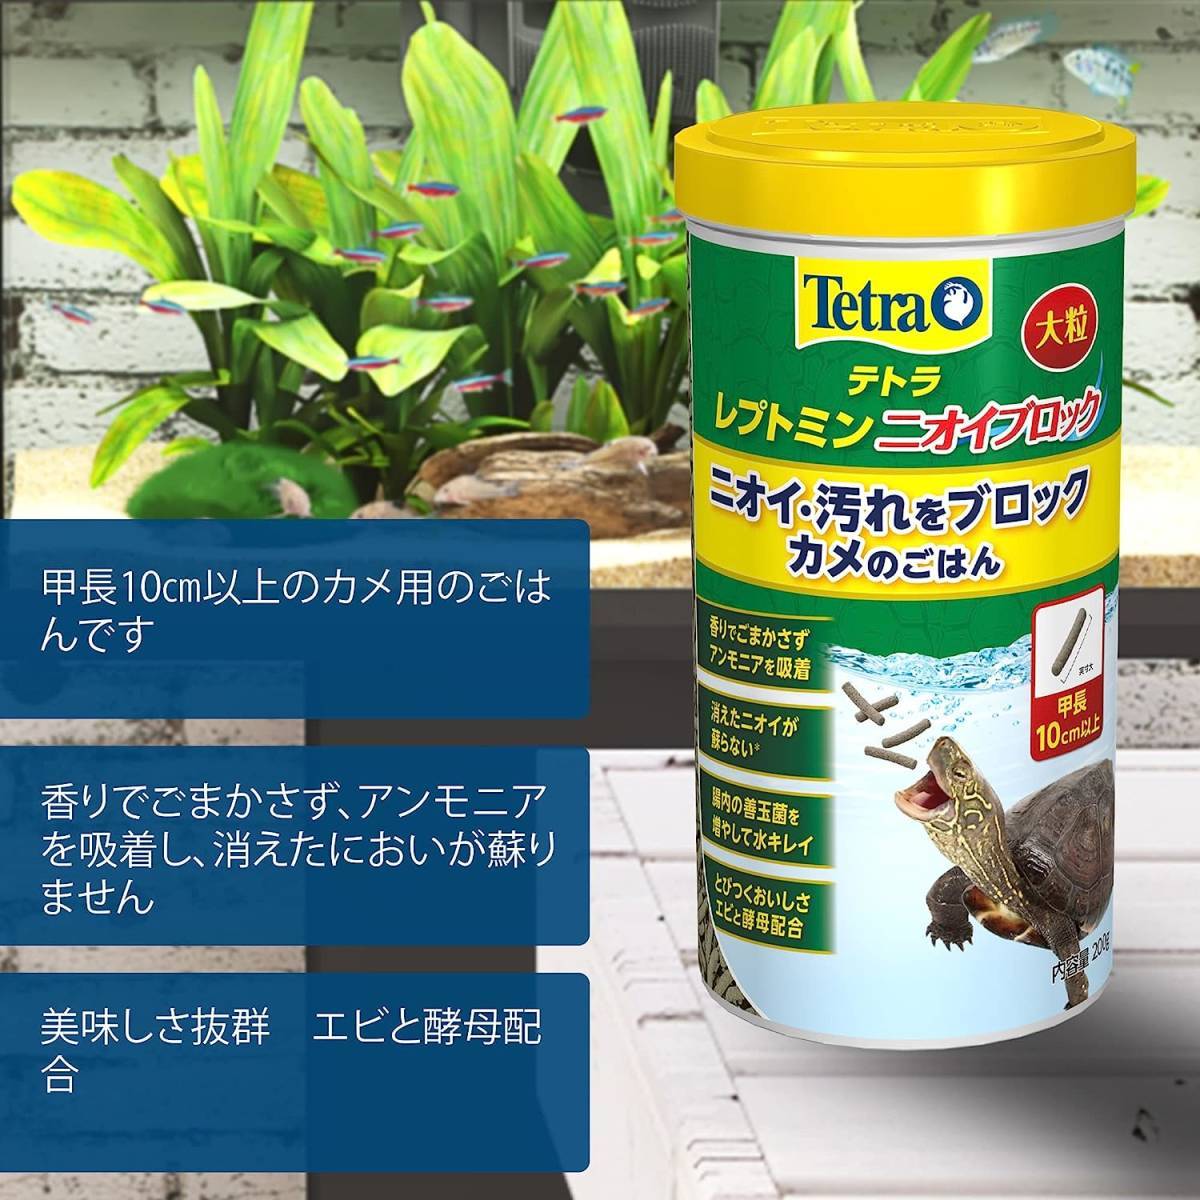  Tetra reptomin запах блок крупный 200g ×2 комплект стоимость доставки единый по всей стране 520 иен 